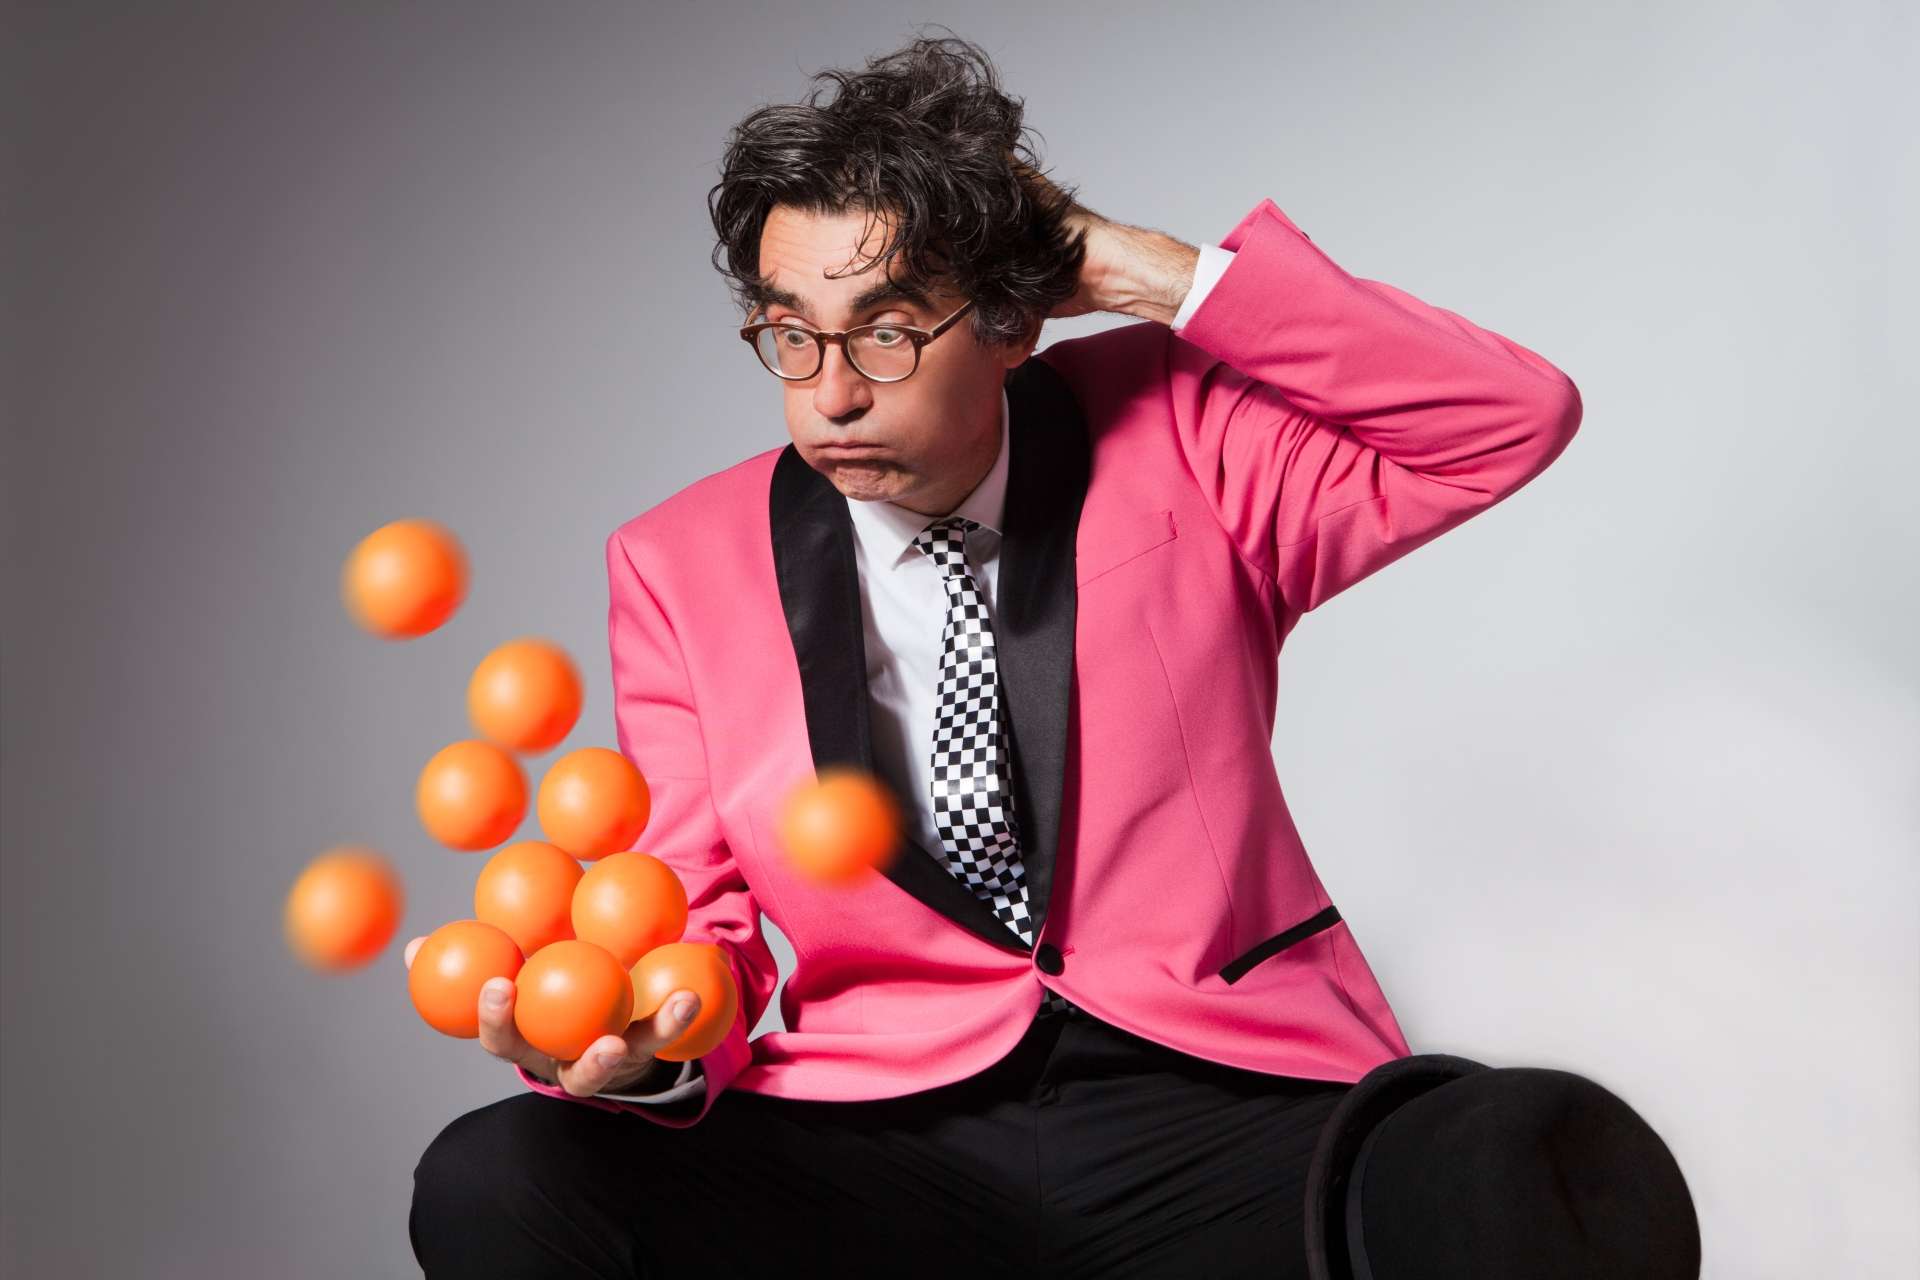 Un homme vêtu d'un costume rose lance un dizaine de balle orange dans les airs avec une tête embarrassé en se grattant la tête.